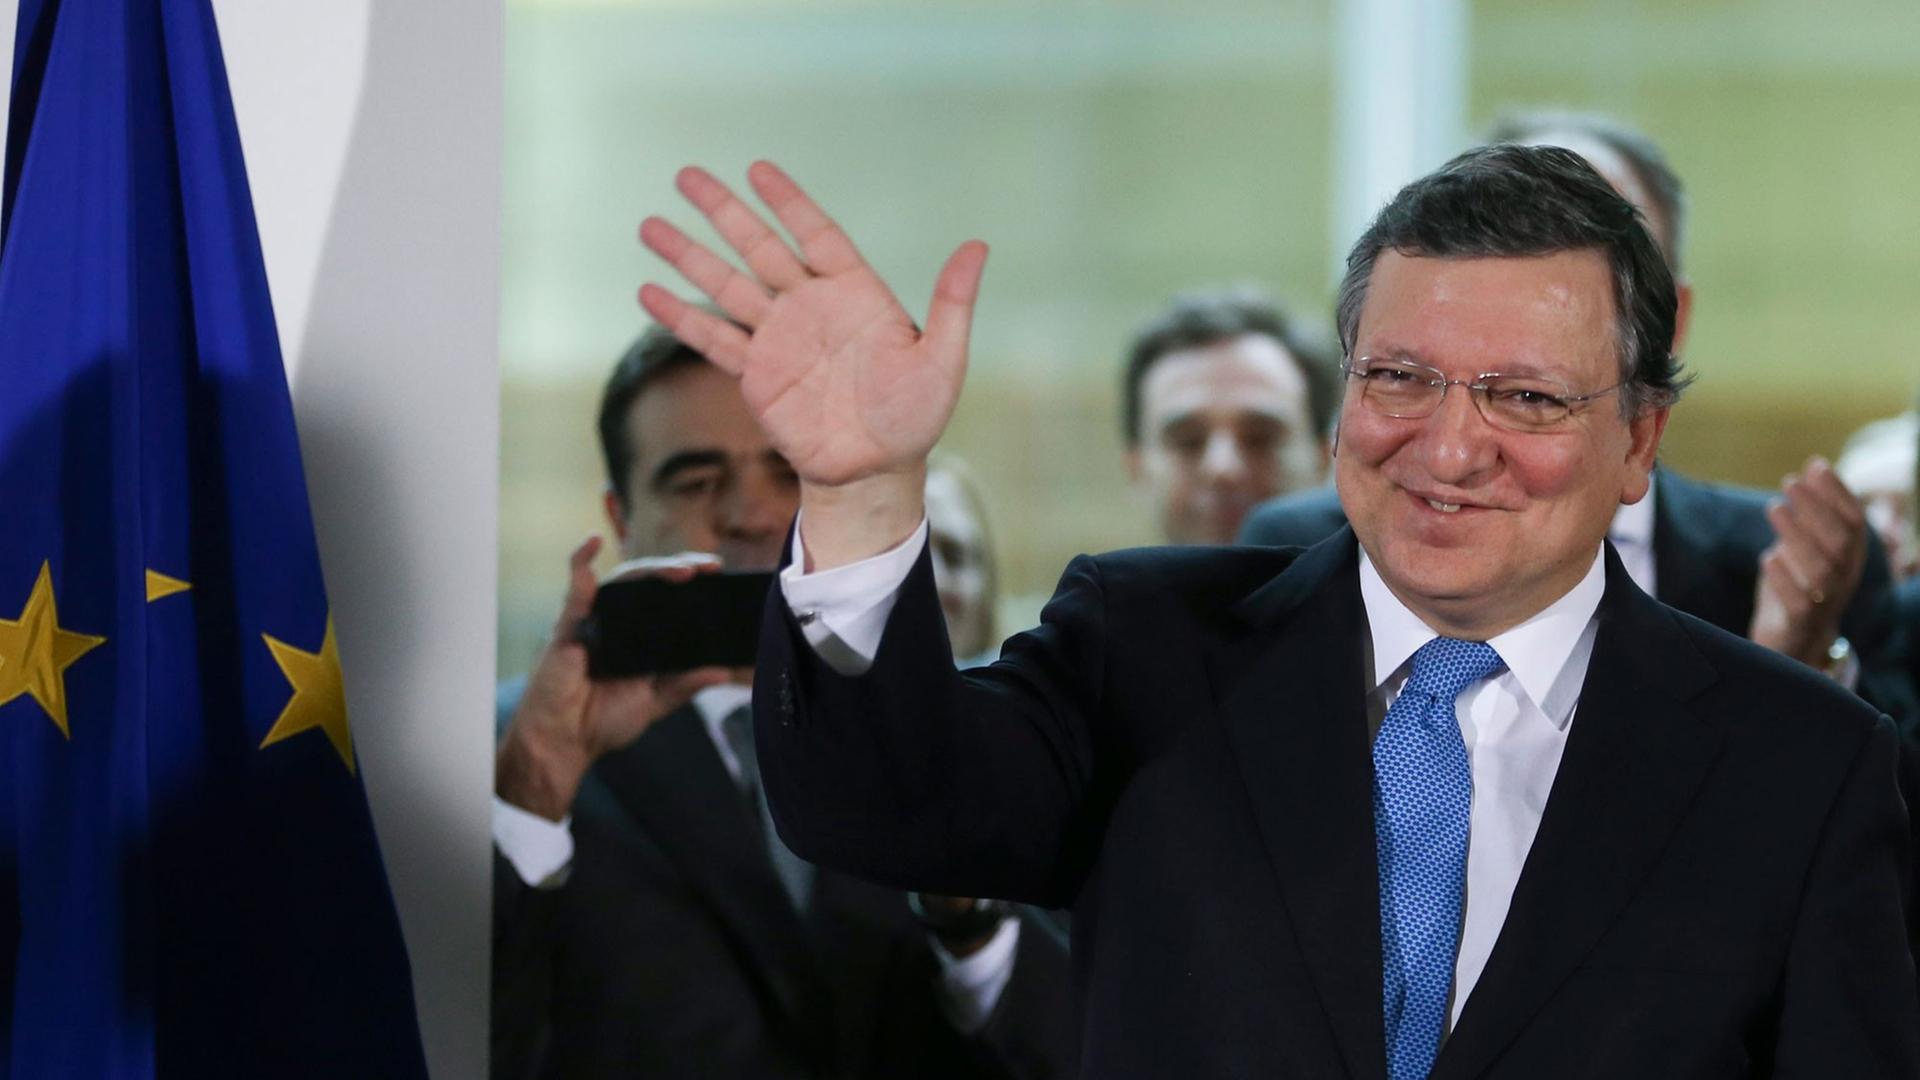 José Manuel Barroso bei seinem Abschied als Präsident der EU-Kommission in Brüssel